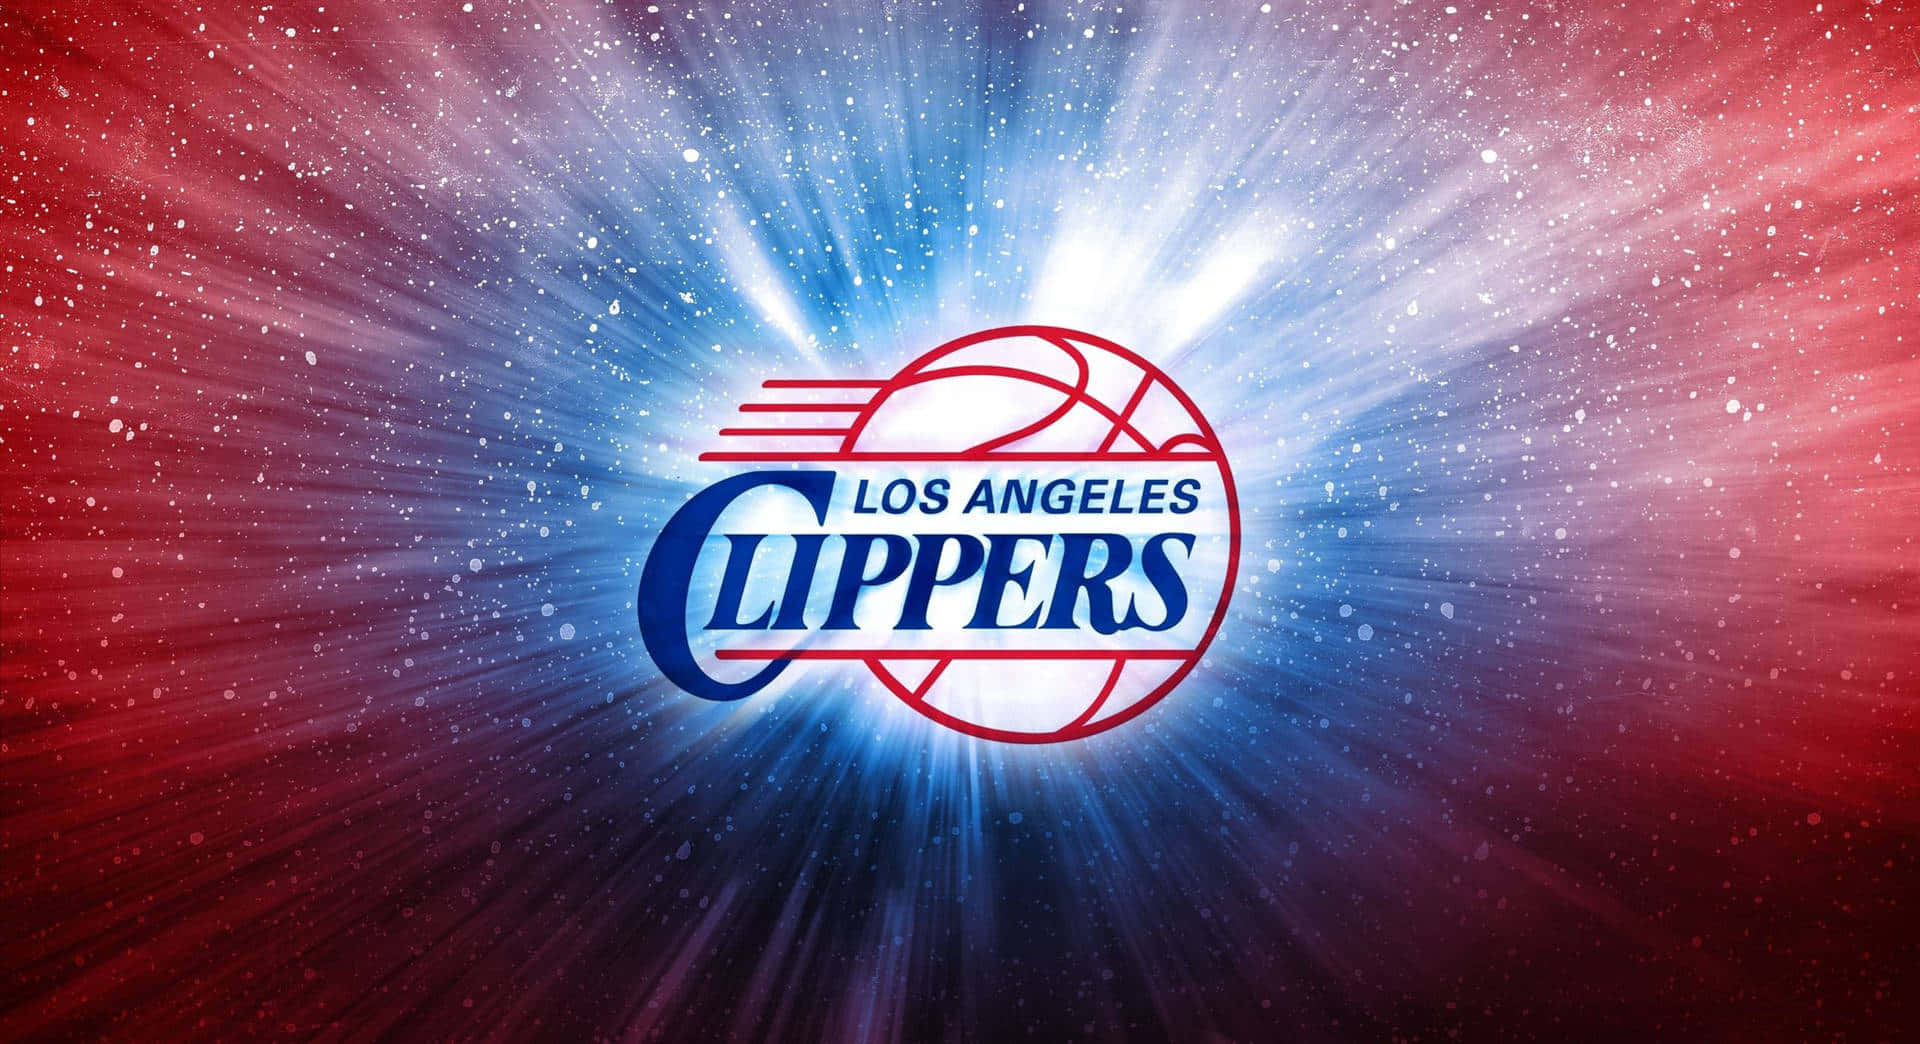 Logodei La Clippers Illuminato Contro Una Galassia Stellare Sfondo